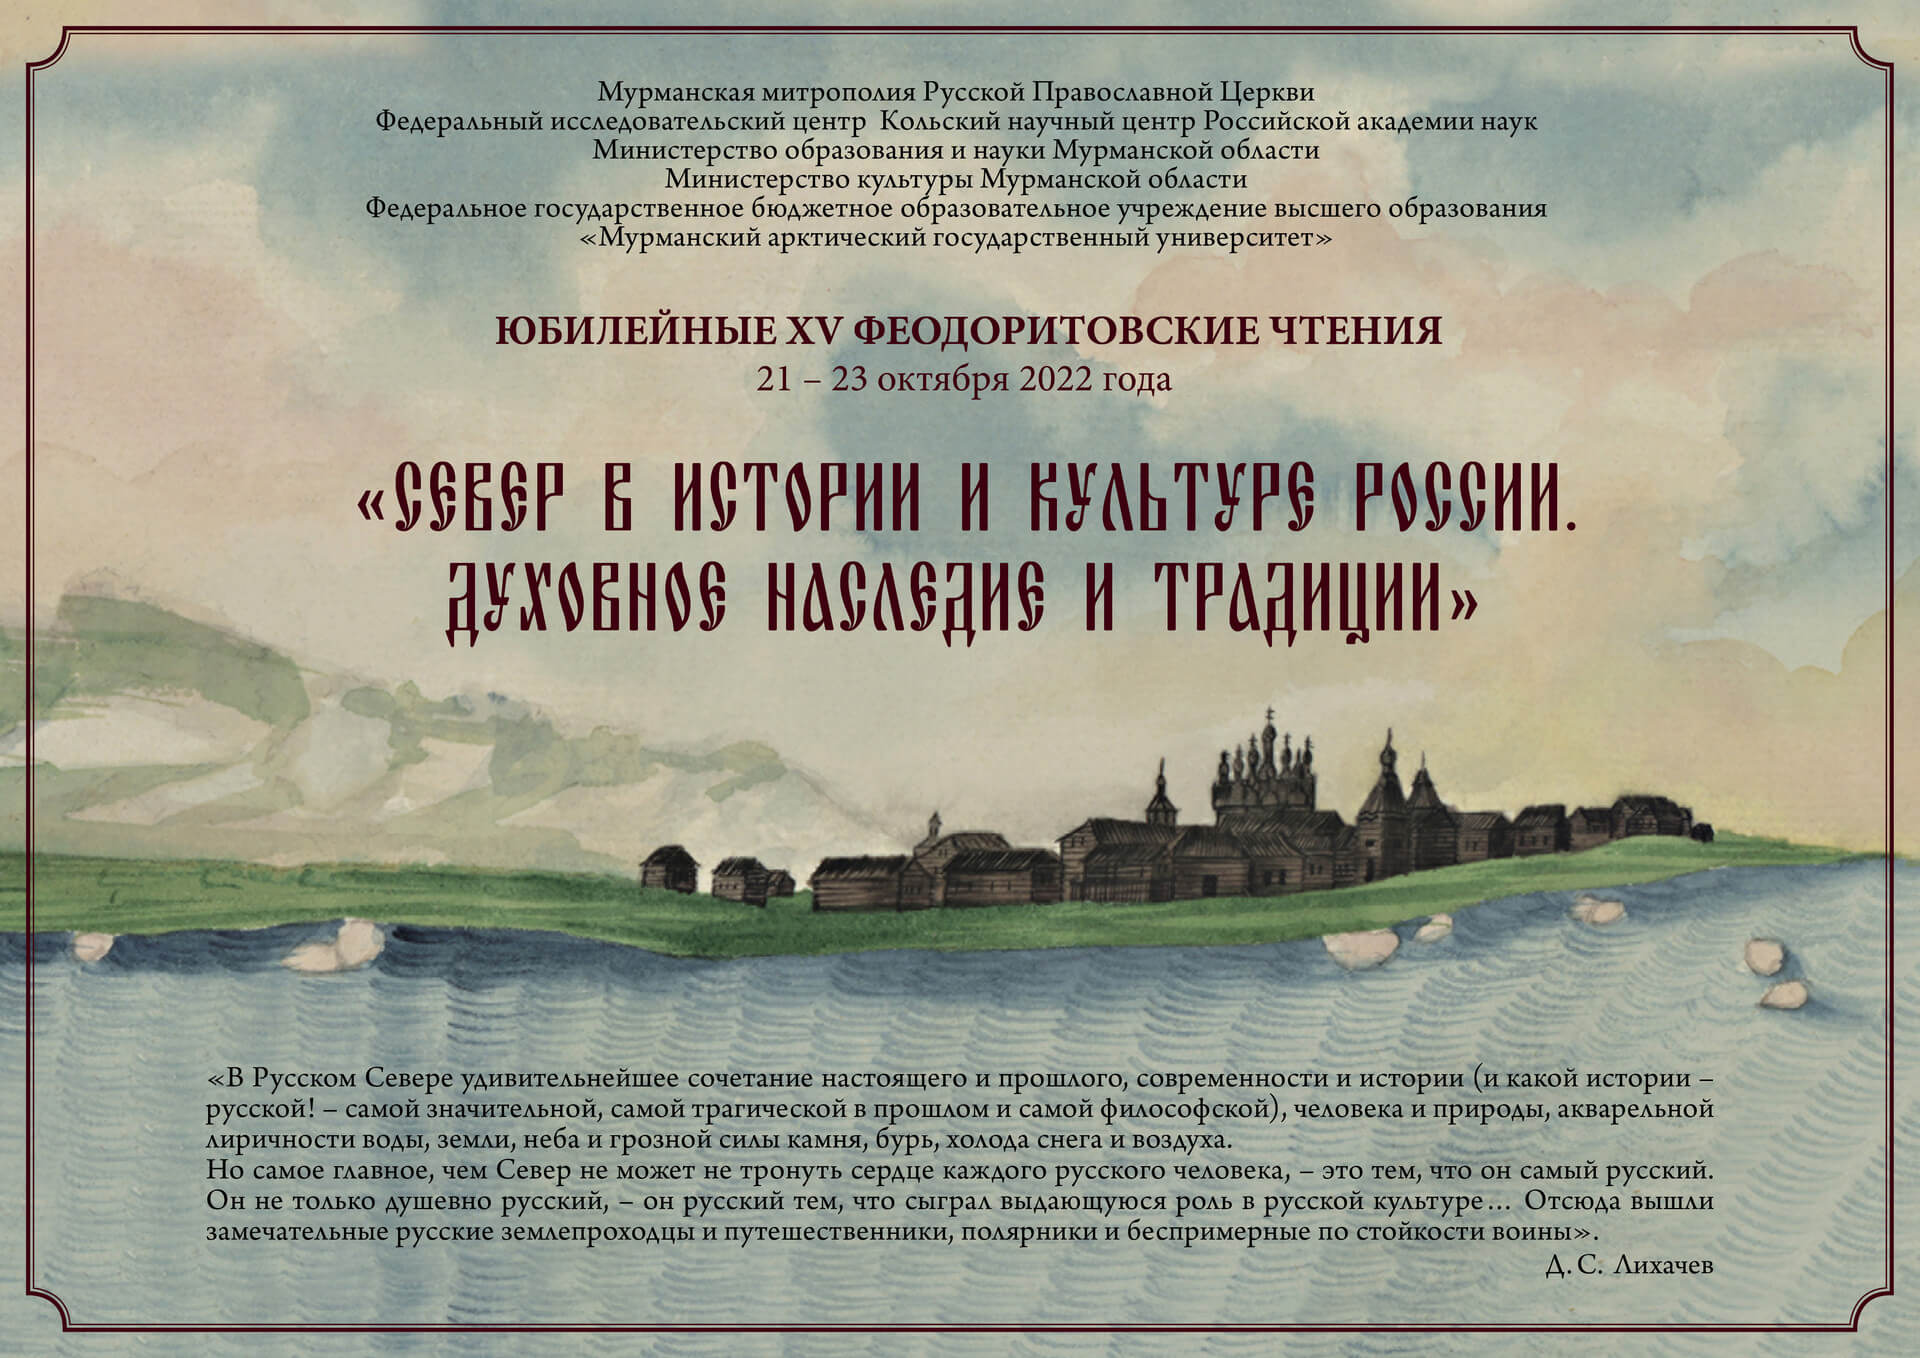 С 20 по 23 октября 2022 года в Мурманске проходят юбилейные XV Феодоритовские чтения: Видео